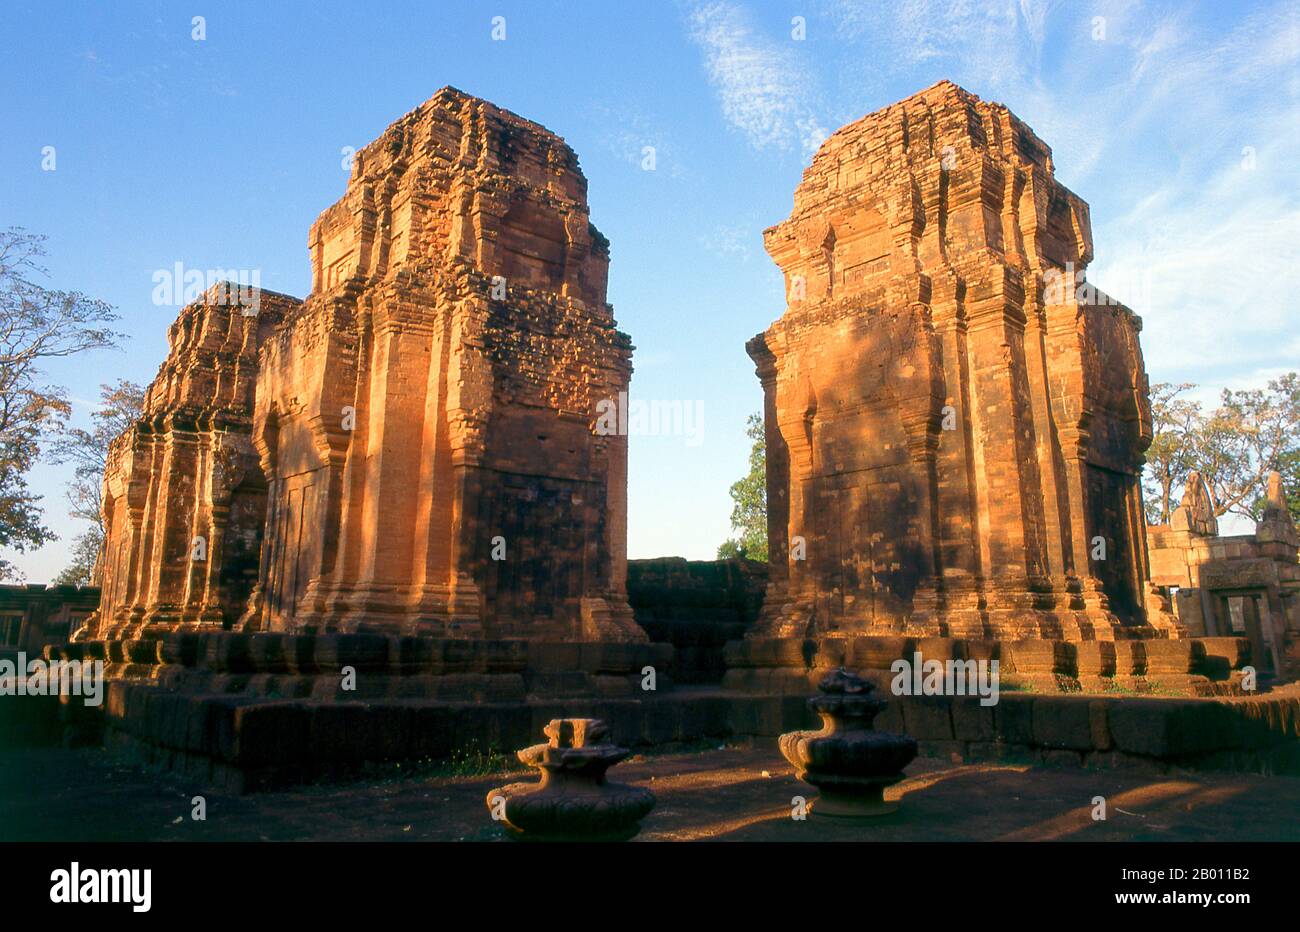 Thailand: Prasat Meuang Tam, Provinz Buriram, Nordostthailand. Prasat hin Mueang Tam ist ein Khmer-Tempel im Khleang- und Baphuon-Stil, der aus dem späten 10. Und frühen 11. Jahrhundert stammt. Die primäre Gottheit war Shiva, obwohl Vishnu auch hier verehrt wurde. Stockfoto